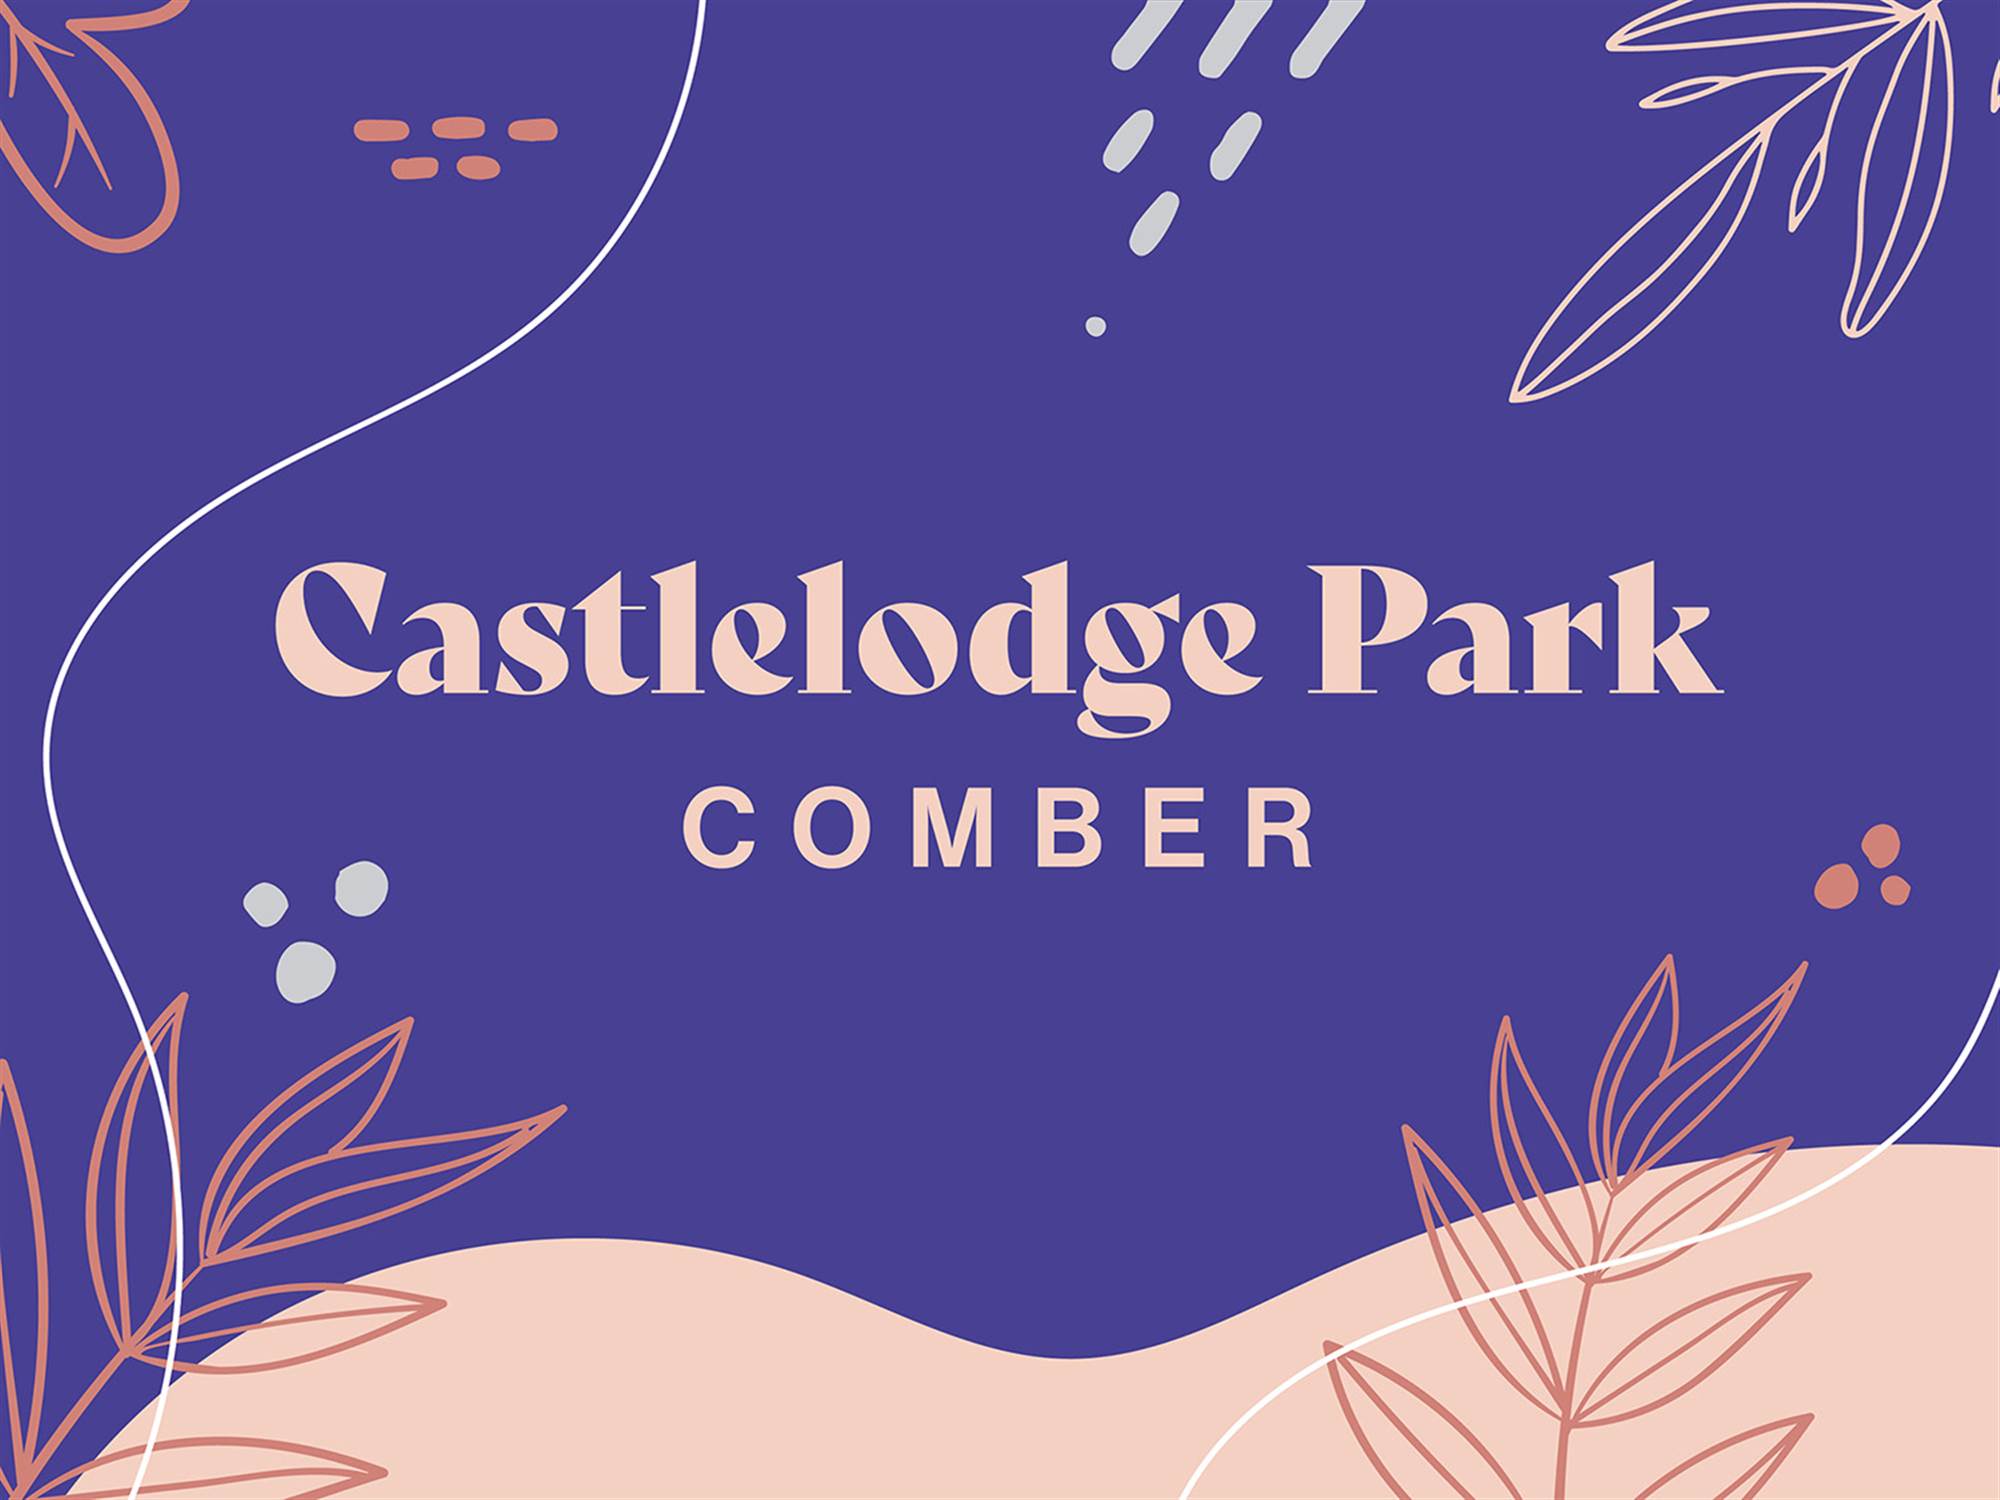 Castlelodge Park